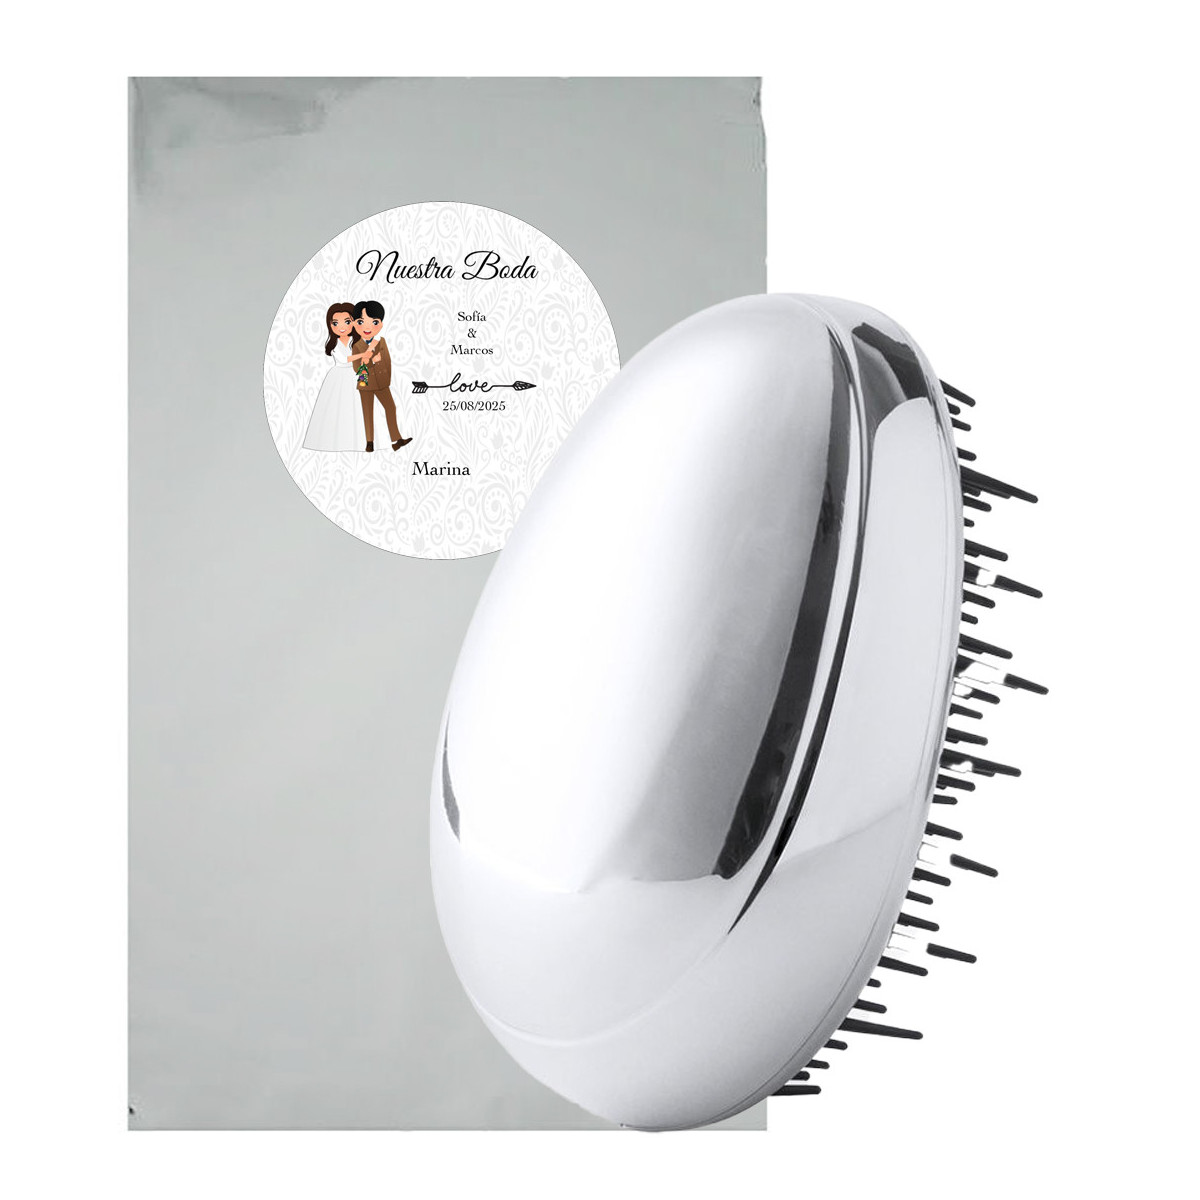 Escova de cabelo com caixa prateada apresentada em bolsa metálica com adesivos personalizados para casamentos